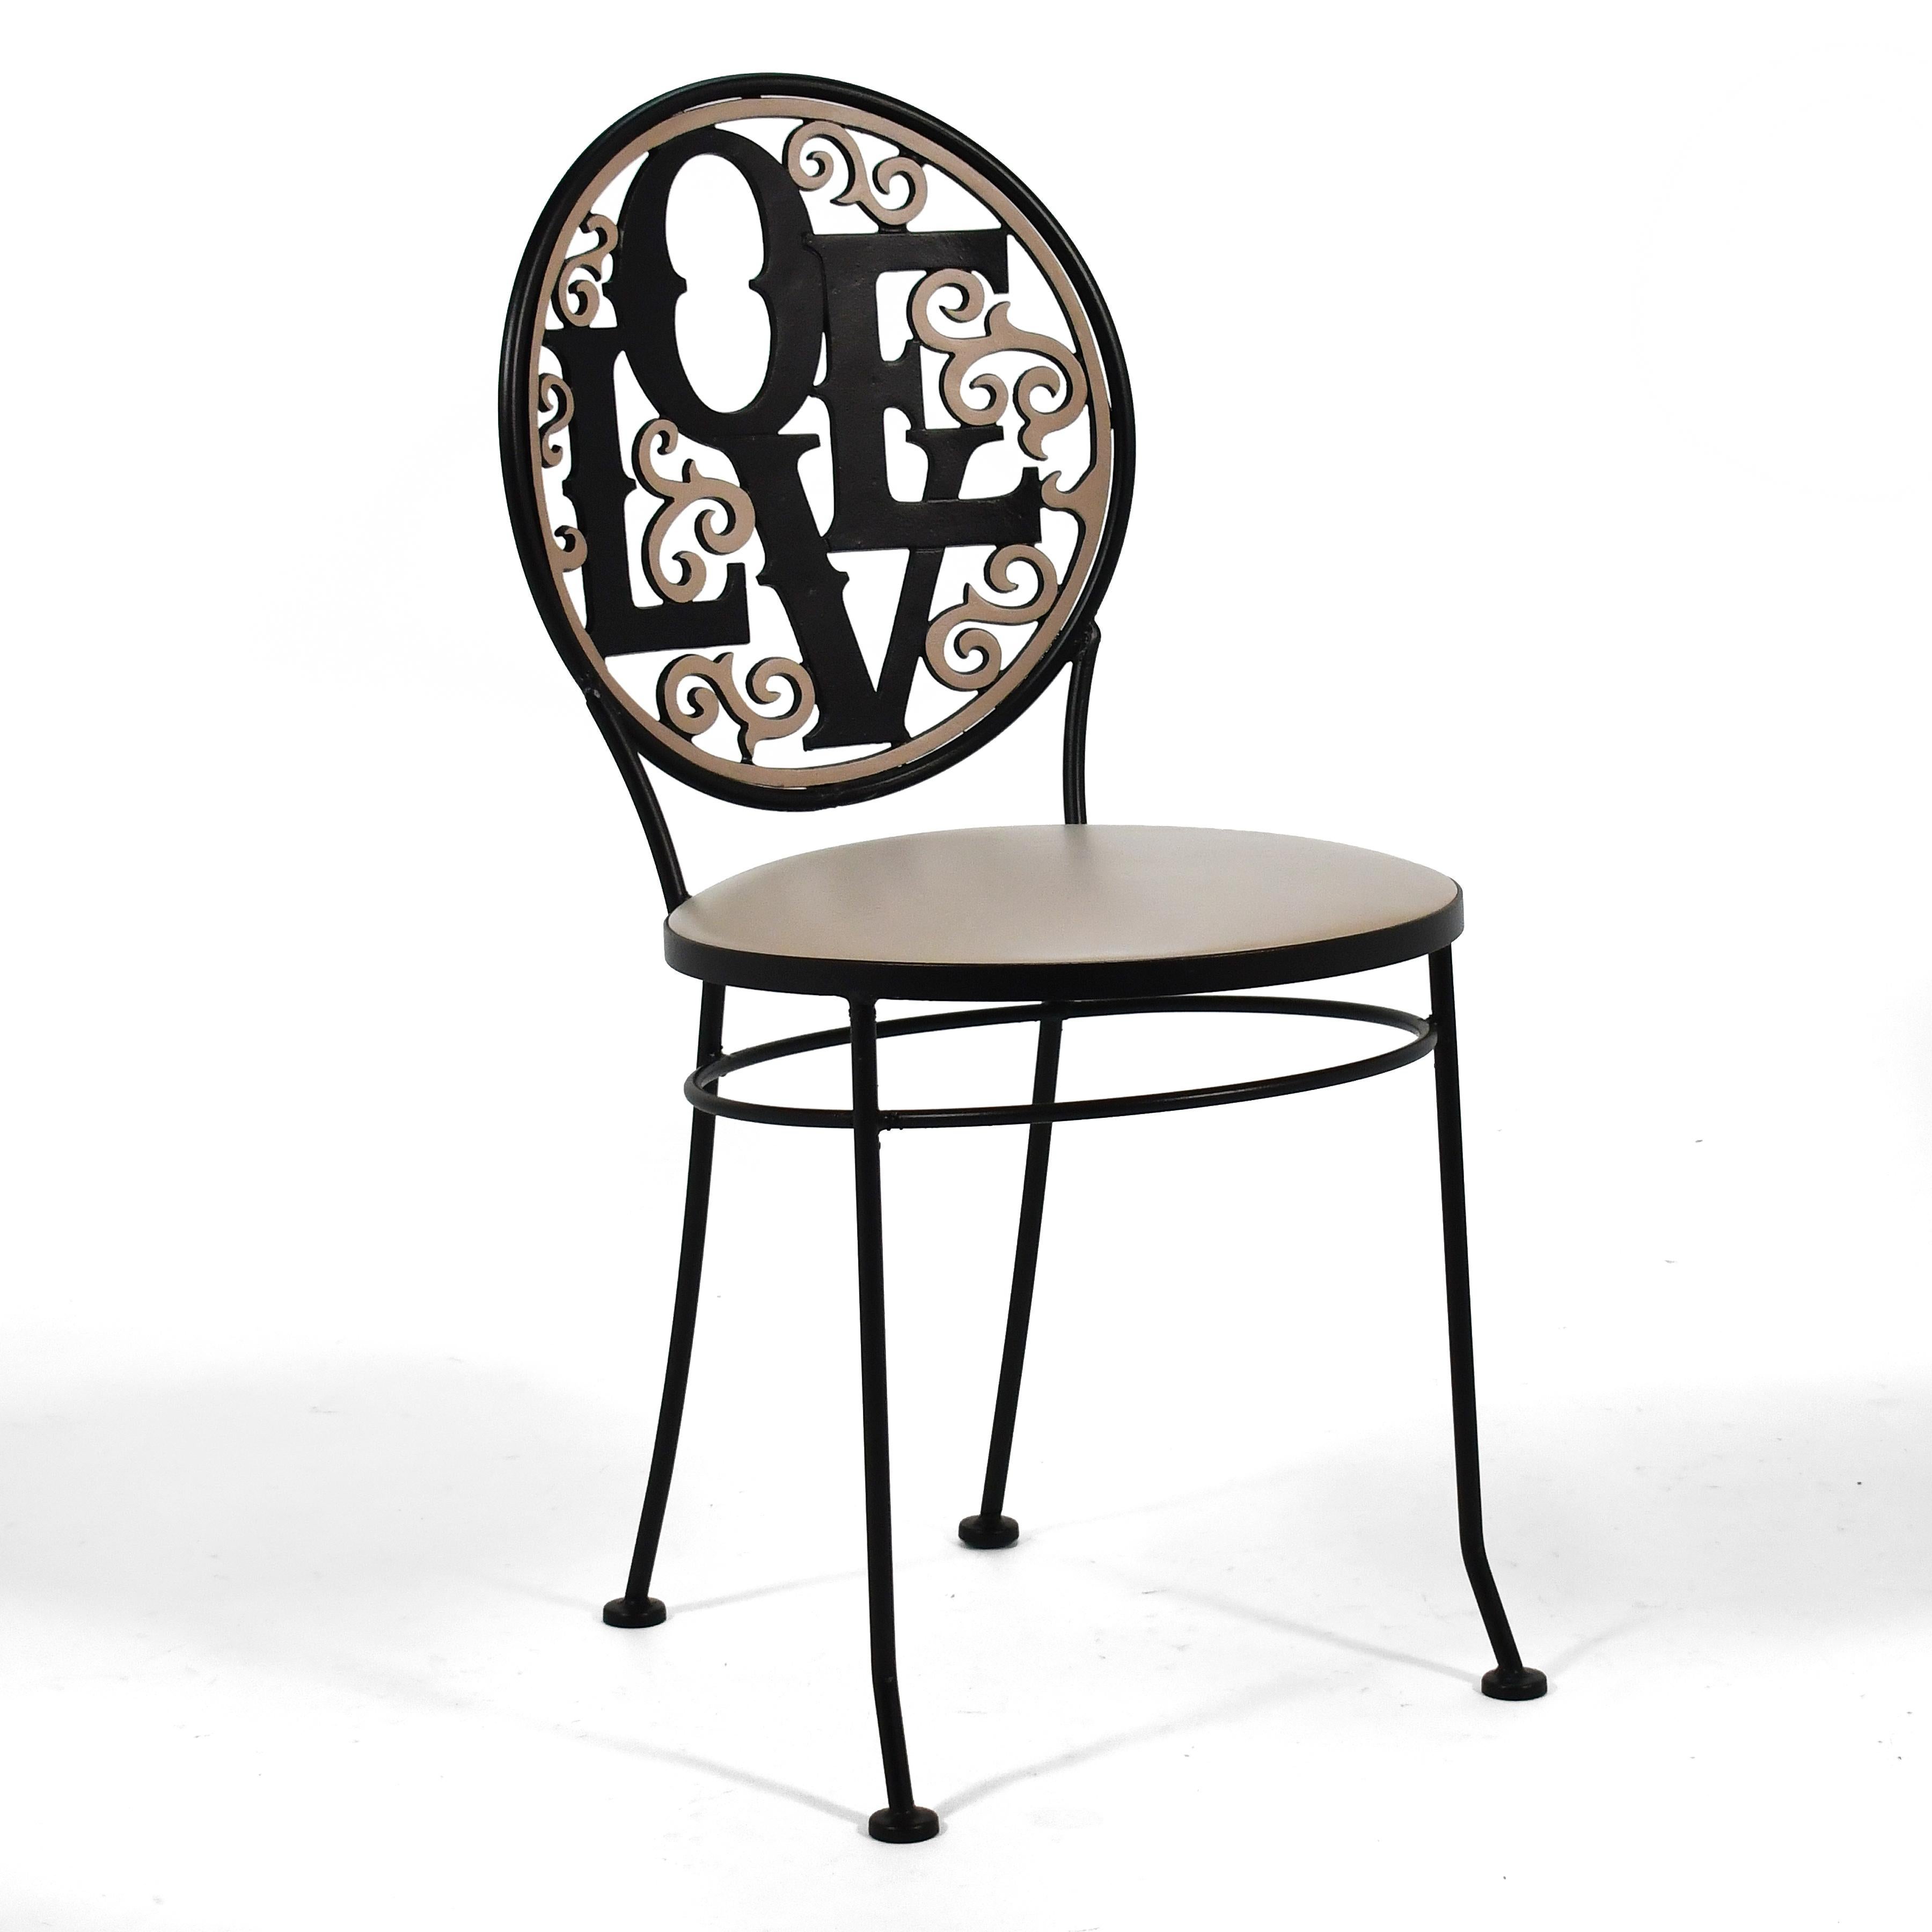 Une conception joyeuse par le designer Arthur Umanoff qui a créé de nombreuses œuvres délicieuses dans des matériaux modestes pour Shaver Howard. Cette chaise en fer forgé a un dossier avec un motif moulé ludique qui porte le nom de Robert Indiana.